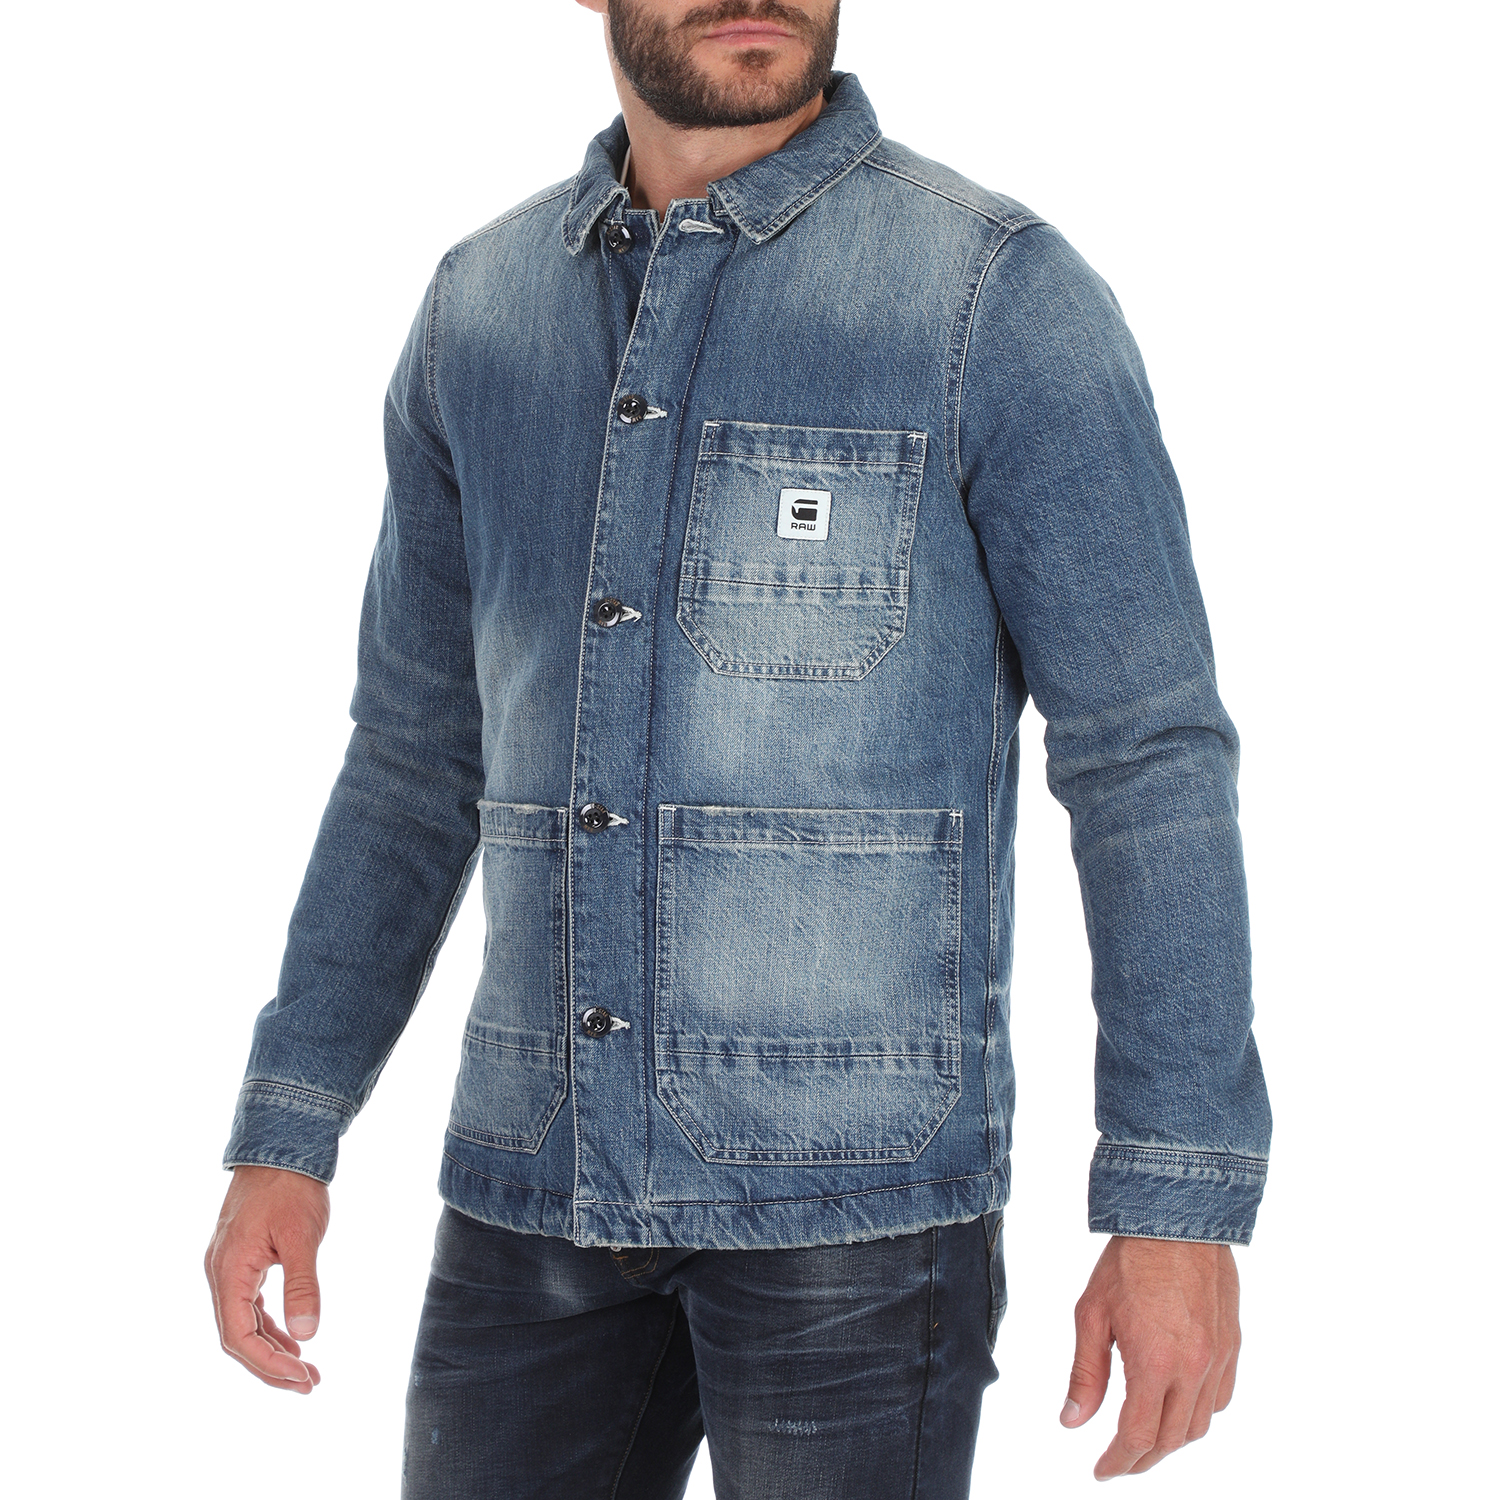 Ανδρικά/Ρούχα/Πανωφόρια/Τζάκετς G-STAR RAW - Ανδρικό jean jacket G-STAR RAW BLAKE PADDED μπλε